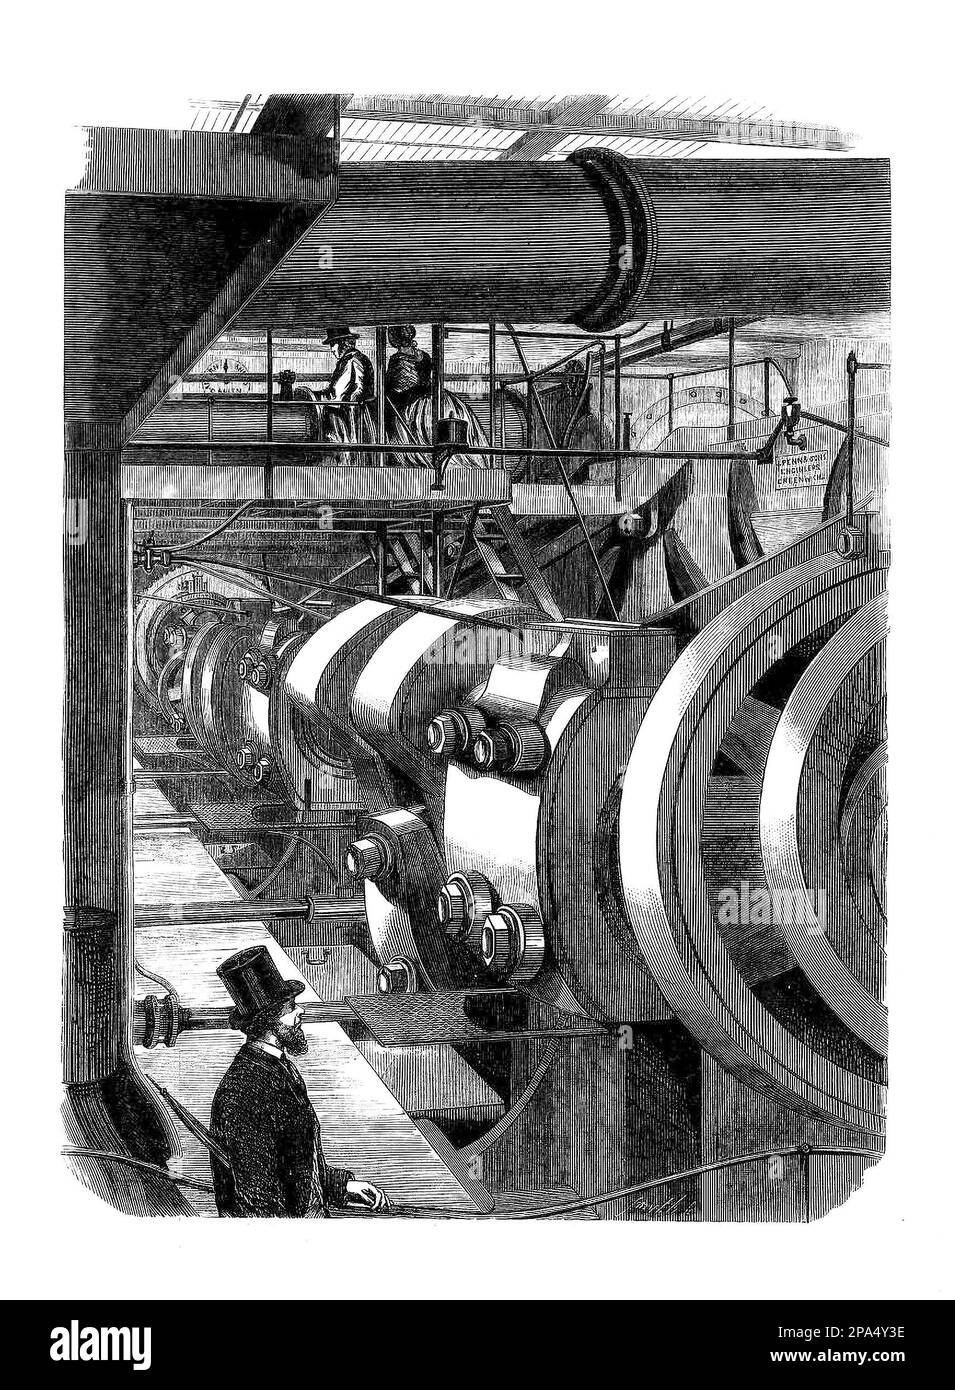 Der Maschinenraum auf der HMS Warrior, einer dampfbetriebenen, gepanzerten Fregatte mit 40 Pistolen, die für die Royal Navy zwischen 1859 und 1861 gebaut wurde. Krieger und ihr Schwesterschiff HMS Black Prince waren die ersten gepanzerten, eisernen Kriegsschiffe und wurden als Reaktion auf Frankreichs Start des ersten meeresbetriebenen, eisernen Kriegsschiffs Gloire im Jahr 1859 gebaut. Stockfoto